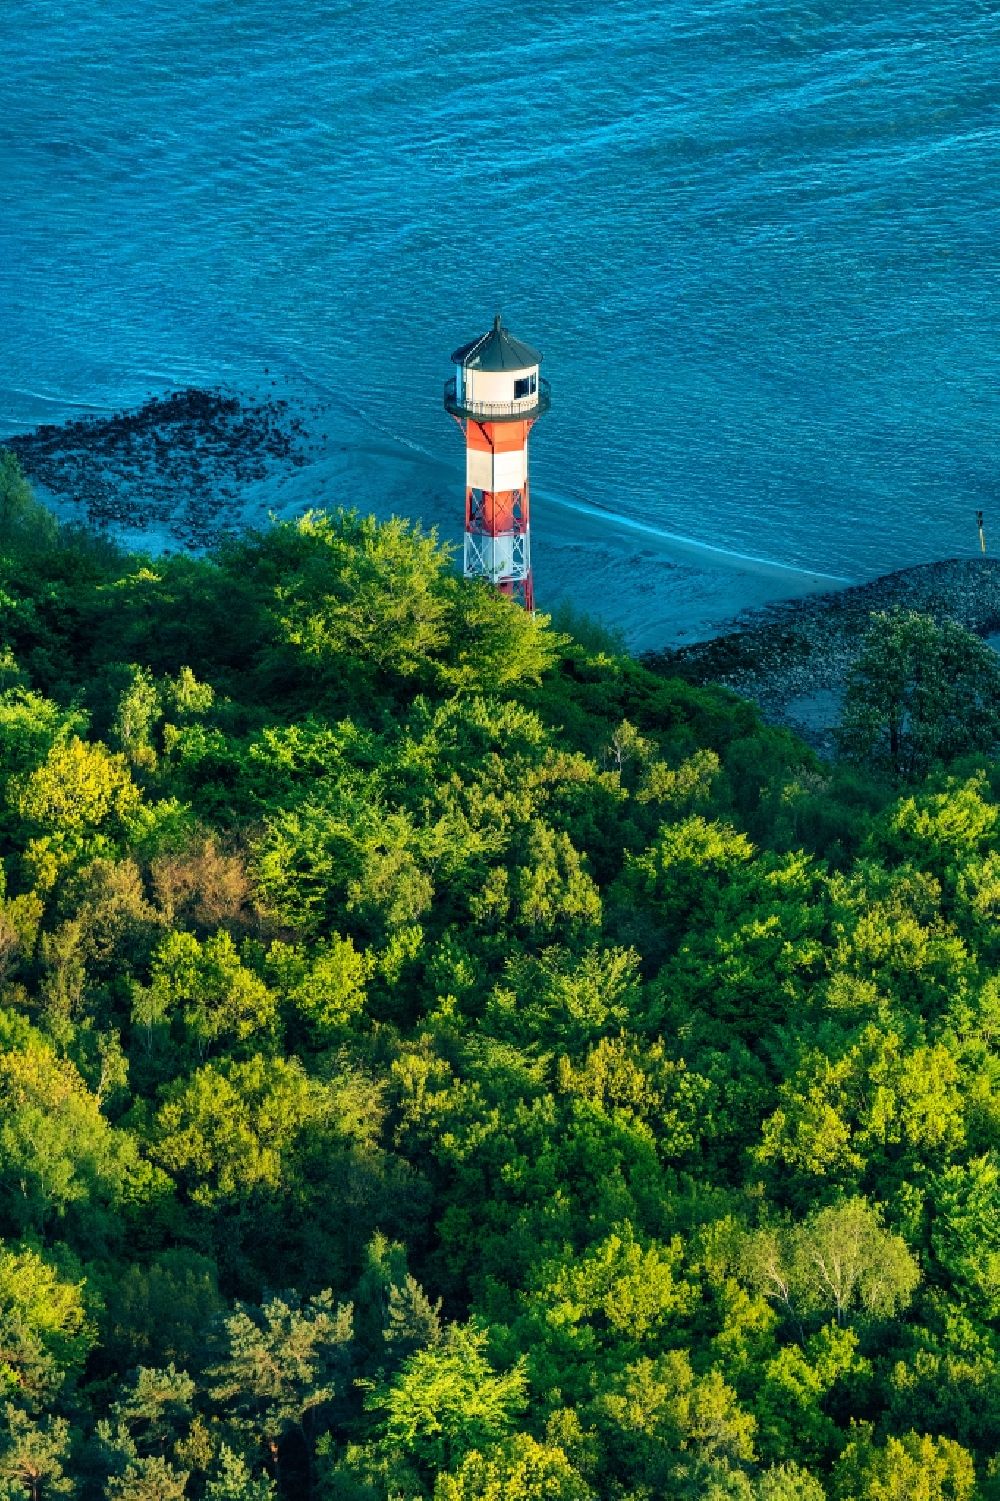 Luftaufnahme Hamburg - Leuchtturm Leuchtturm Wittenbergen als historisches Seefahrtszeichen im Küstenbereich der Elbe am Rissener Ufer in Hamburg, Deutschland